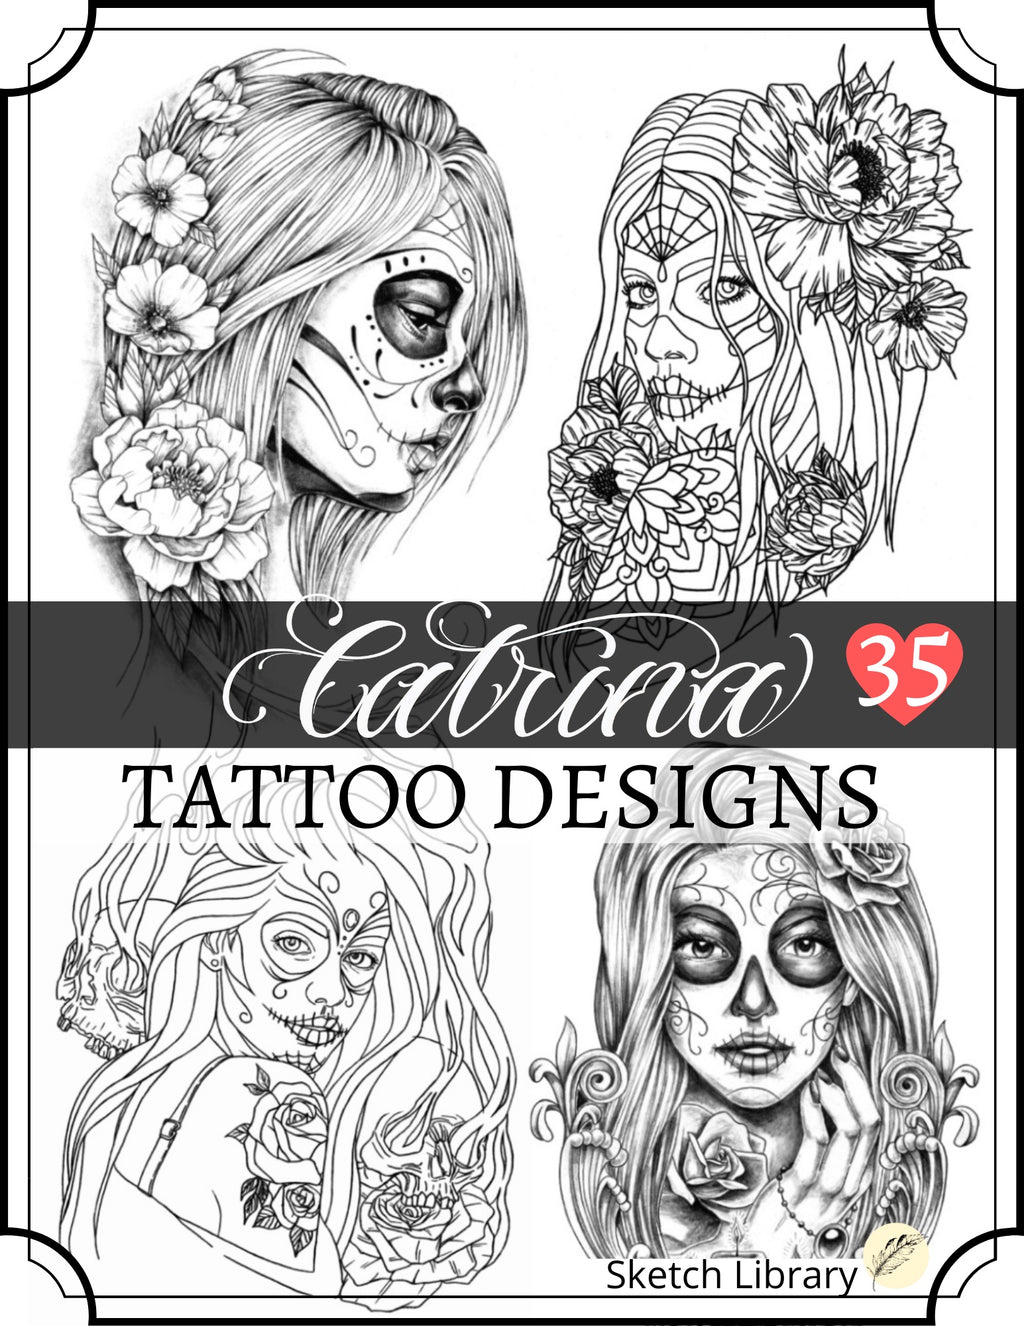 La Catrina designs 35 tattoo designs PDF format, digital book of inspiration and idea, dia de Muertos